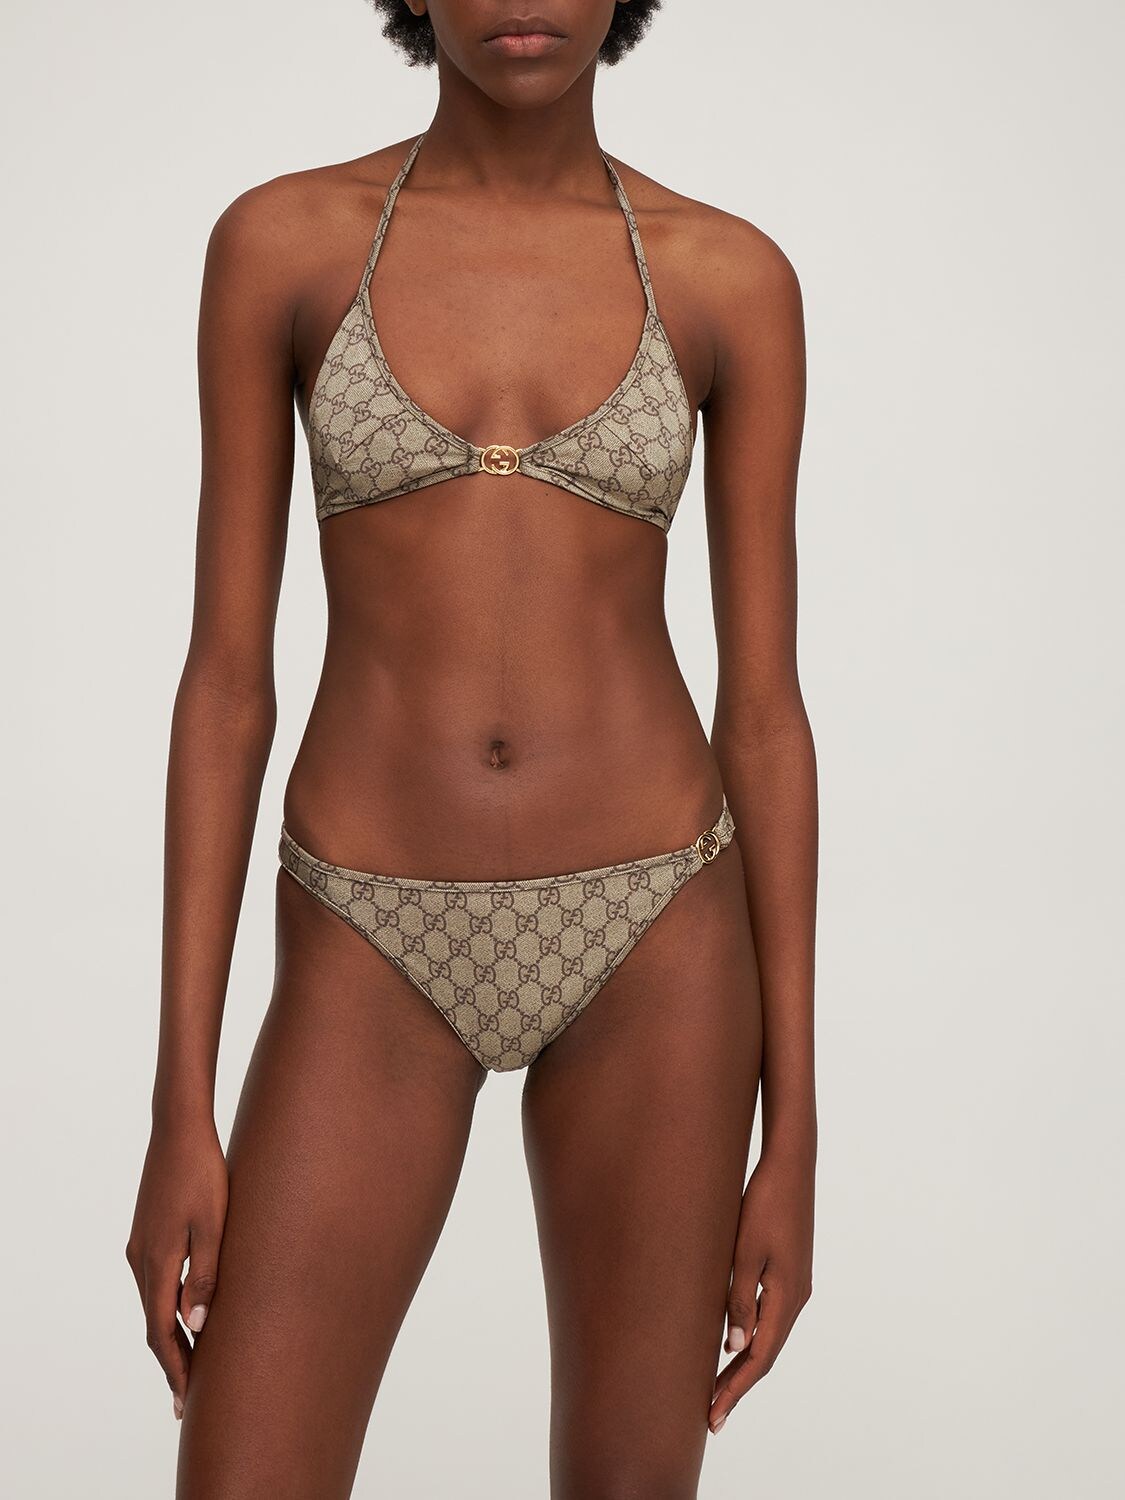 Gucci Embellished Printed Bikini - Beige - Xxs